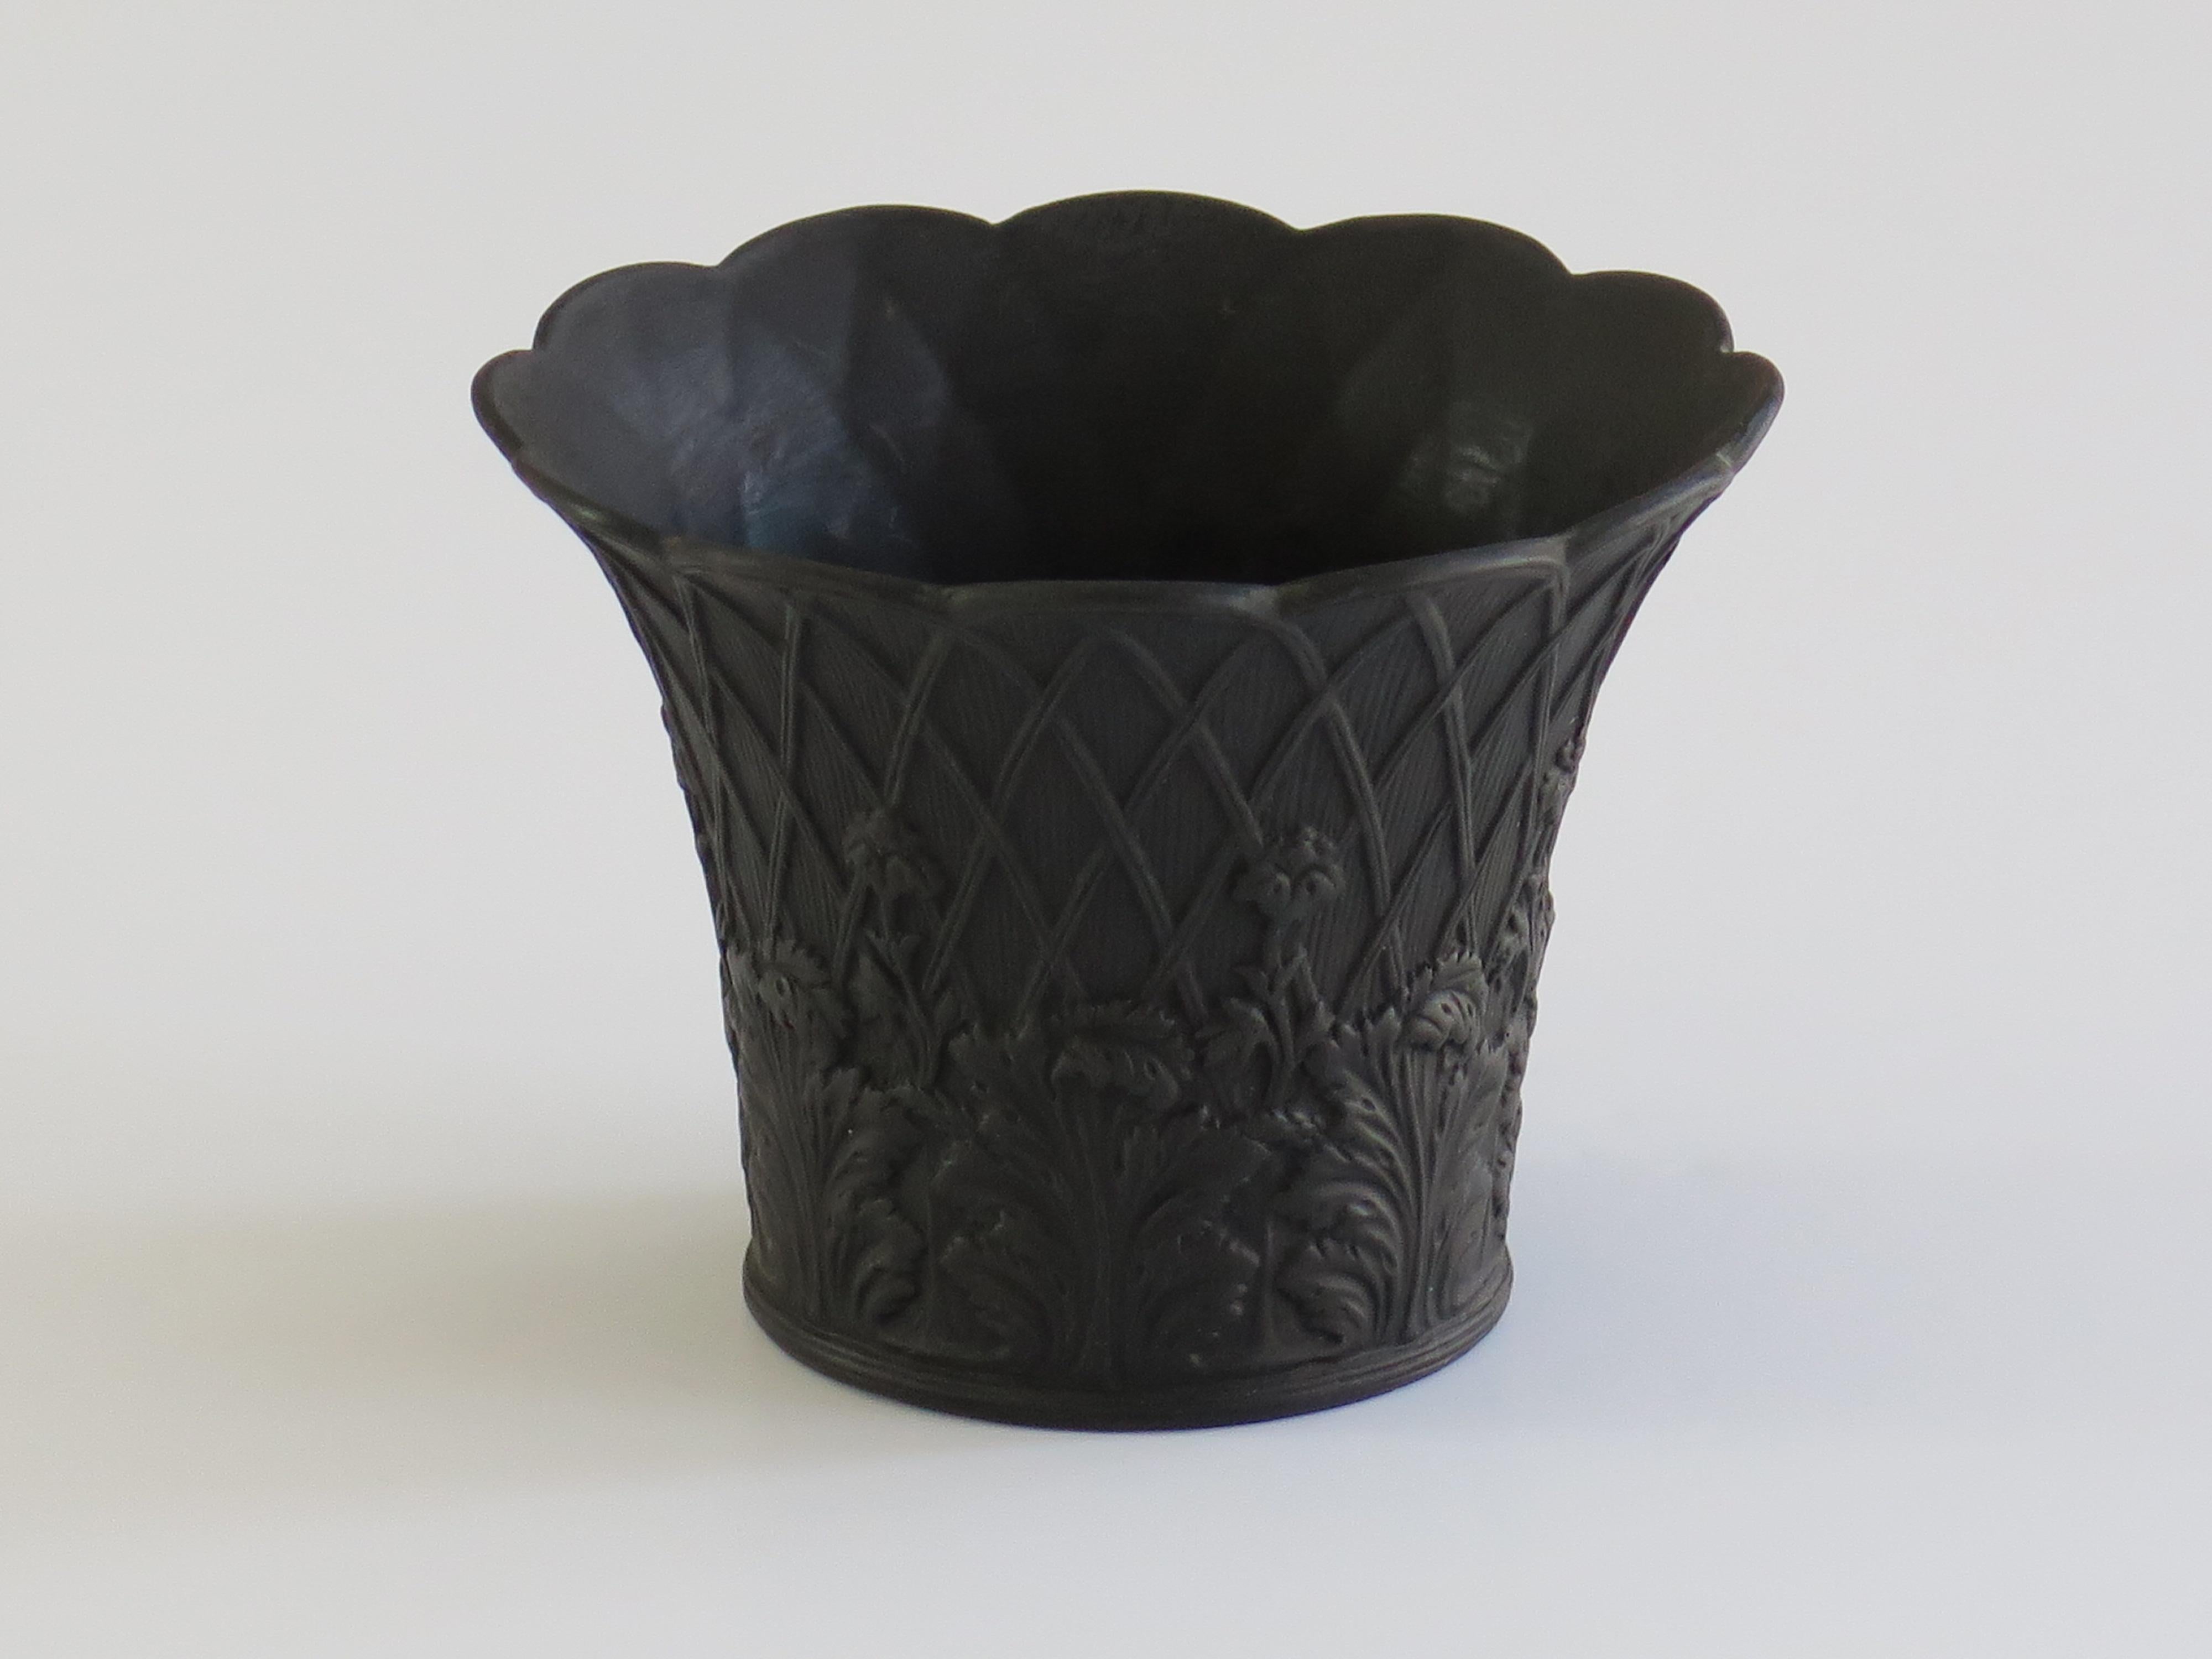 Il s'agit d'un bon petit pot de fleurs en basalte noir, fabriqué par Wedgwood et datant du début du 20e siècle, Circa 1920. 

La pièce est bien empotée dans une forme traditionnelle de pot de fleurs avec un bord ondulé.

La décoration présente un